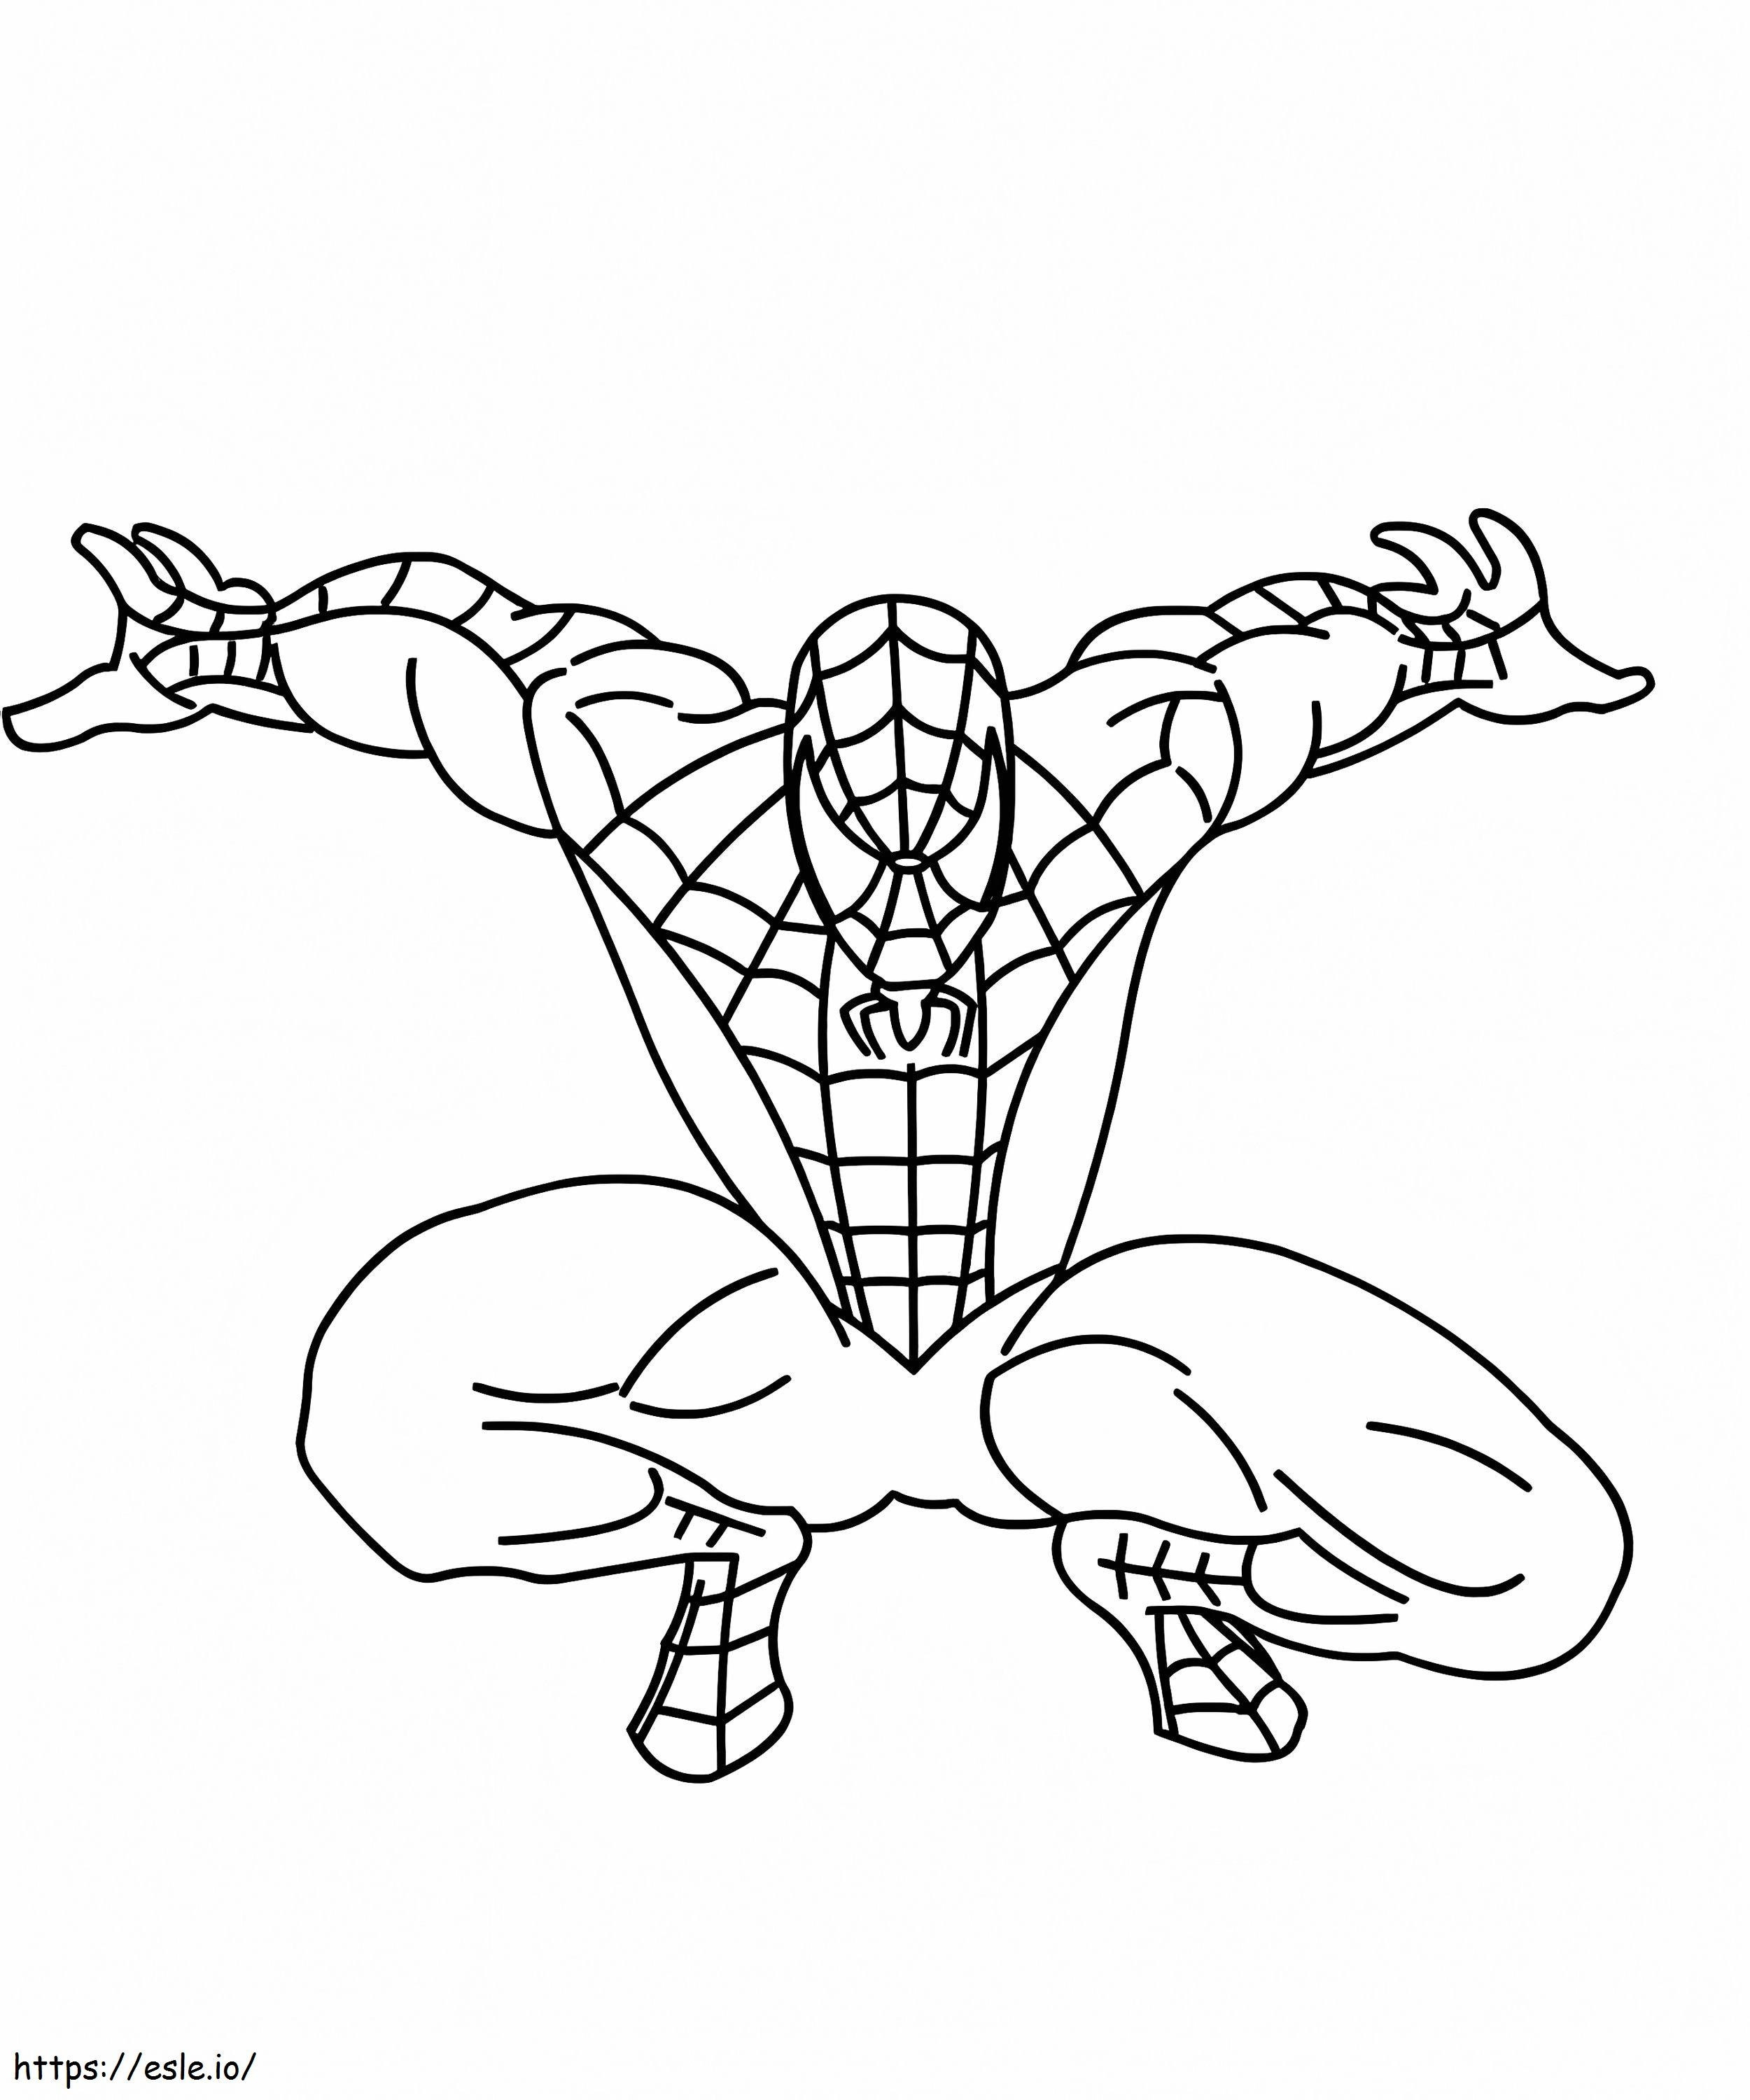 Homem-Aranha fácil para colorir